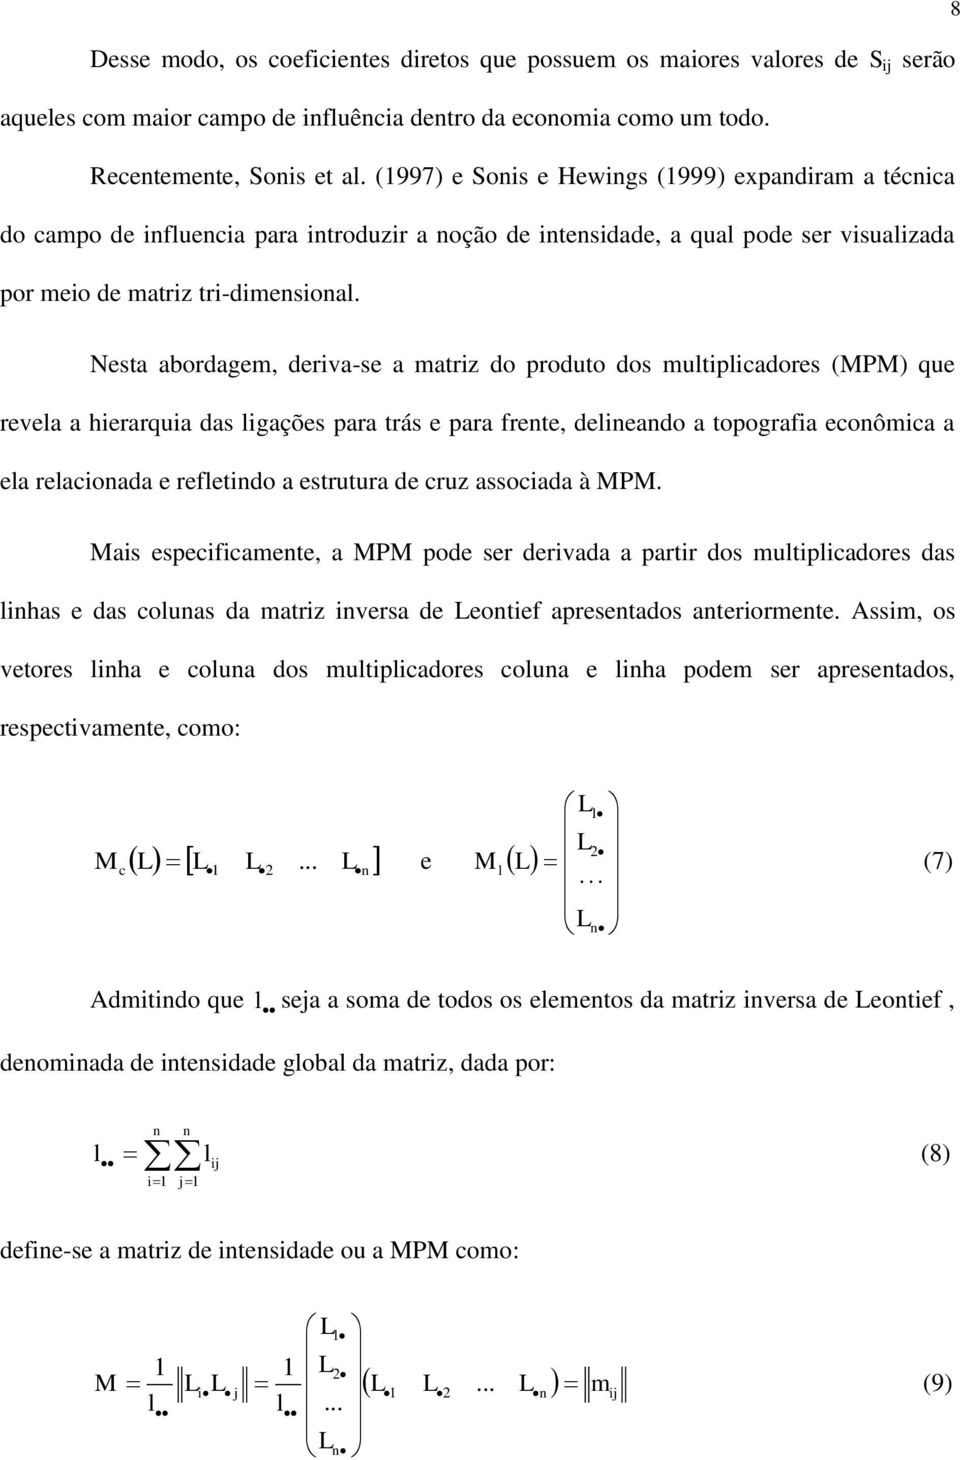 8 Nesta abordagem, deriva-se a matriz do produto dos multiplicadores (MPM) que revela a hierarquia das ligações para trás e para frente, delineando a topografia econômica a ela relacionada e